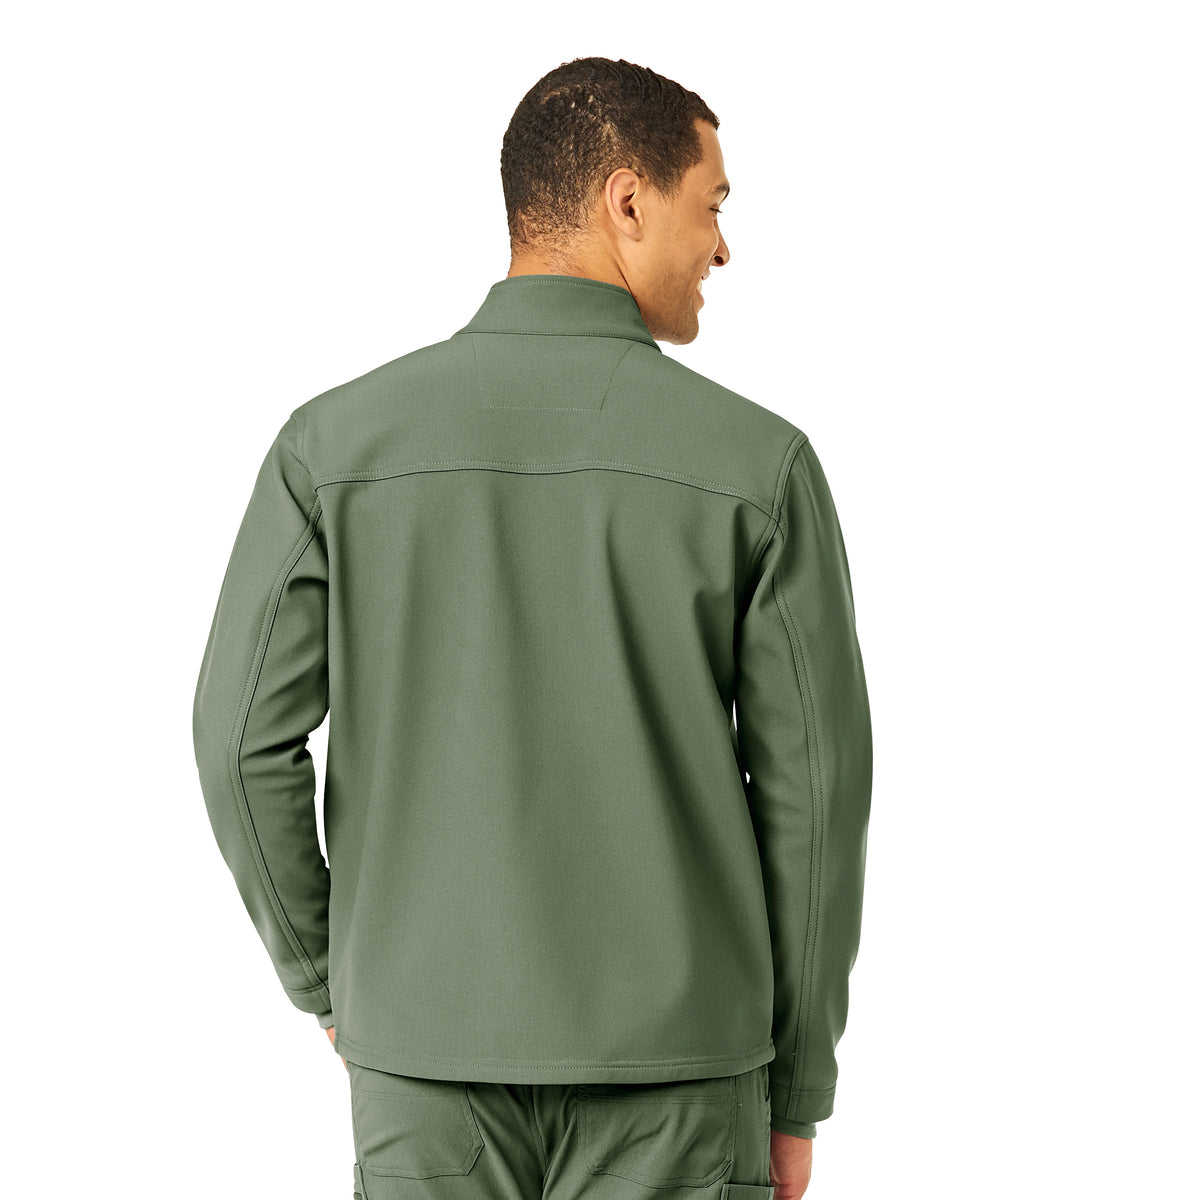 Rugged Flex Men's Bonded Fleece Jacket Olive back view